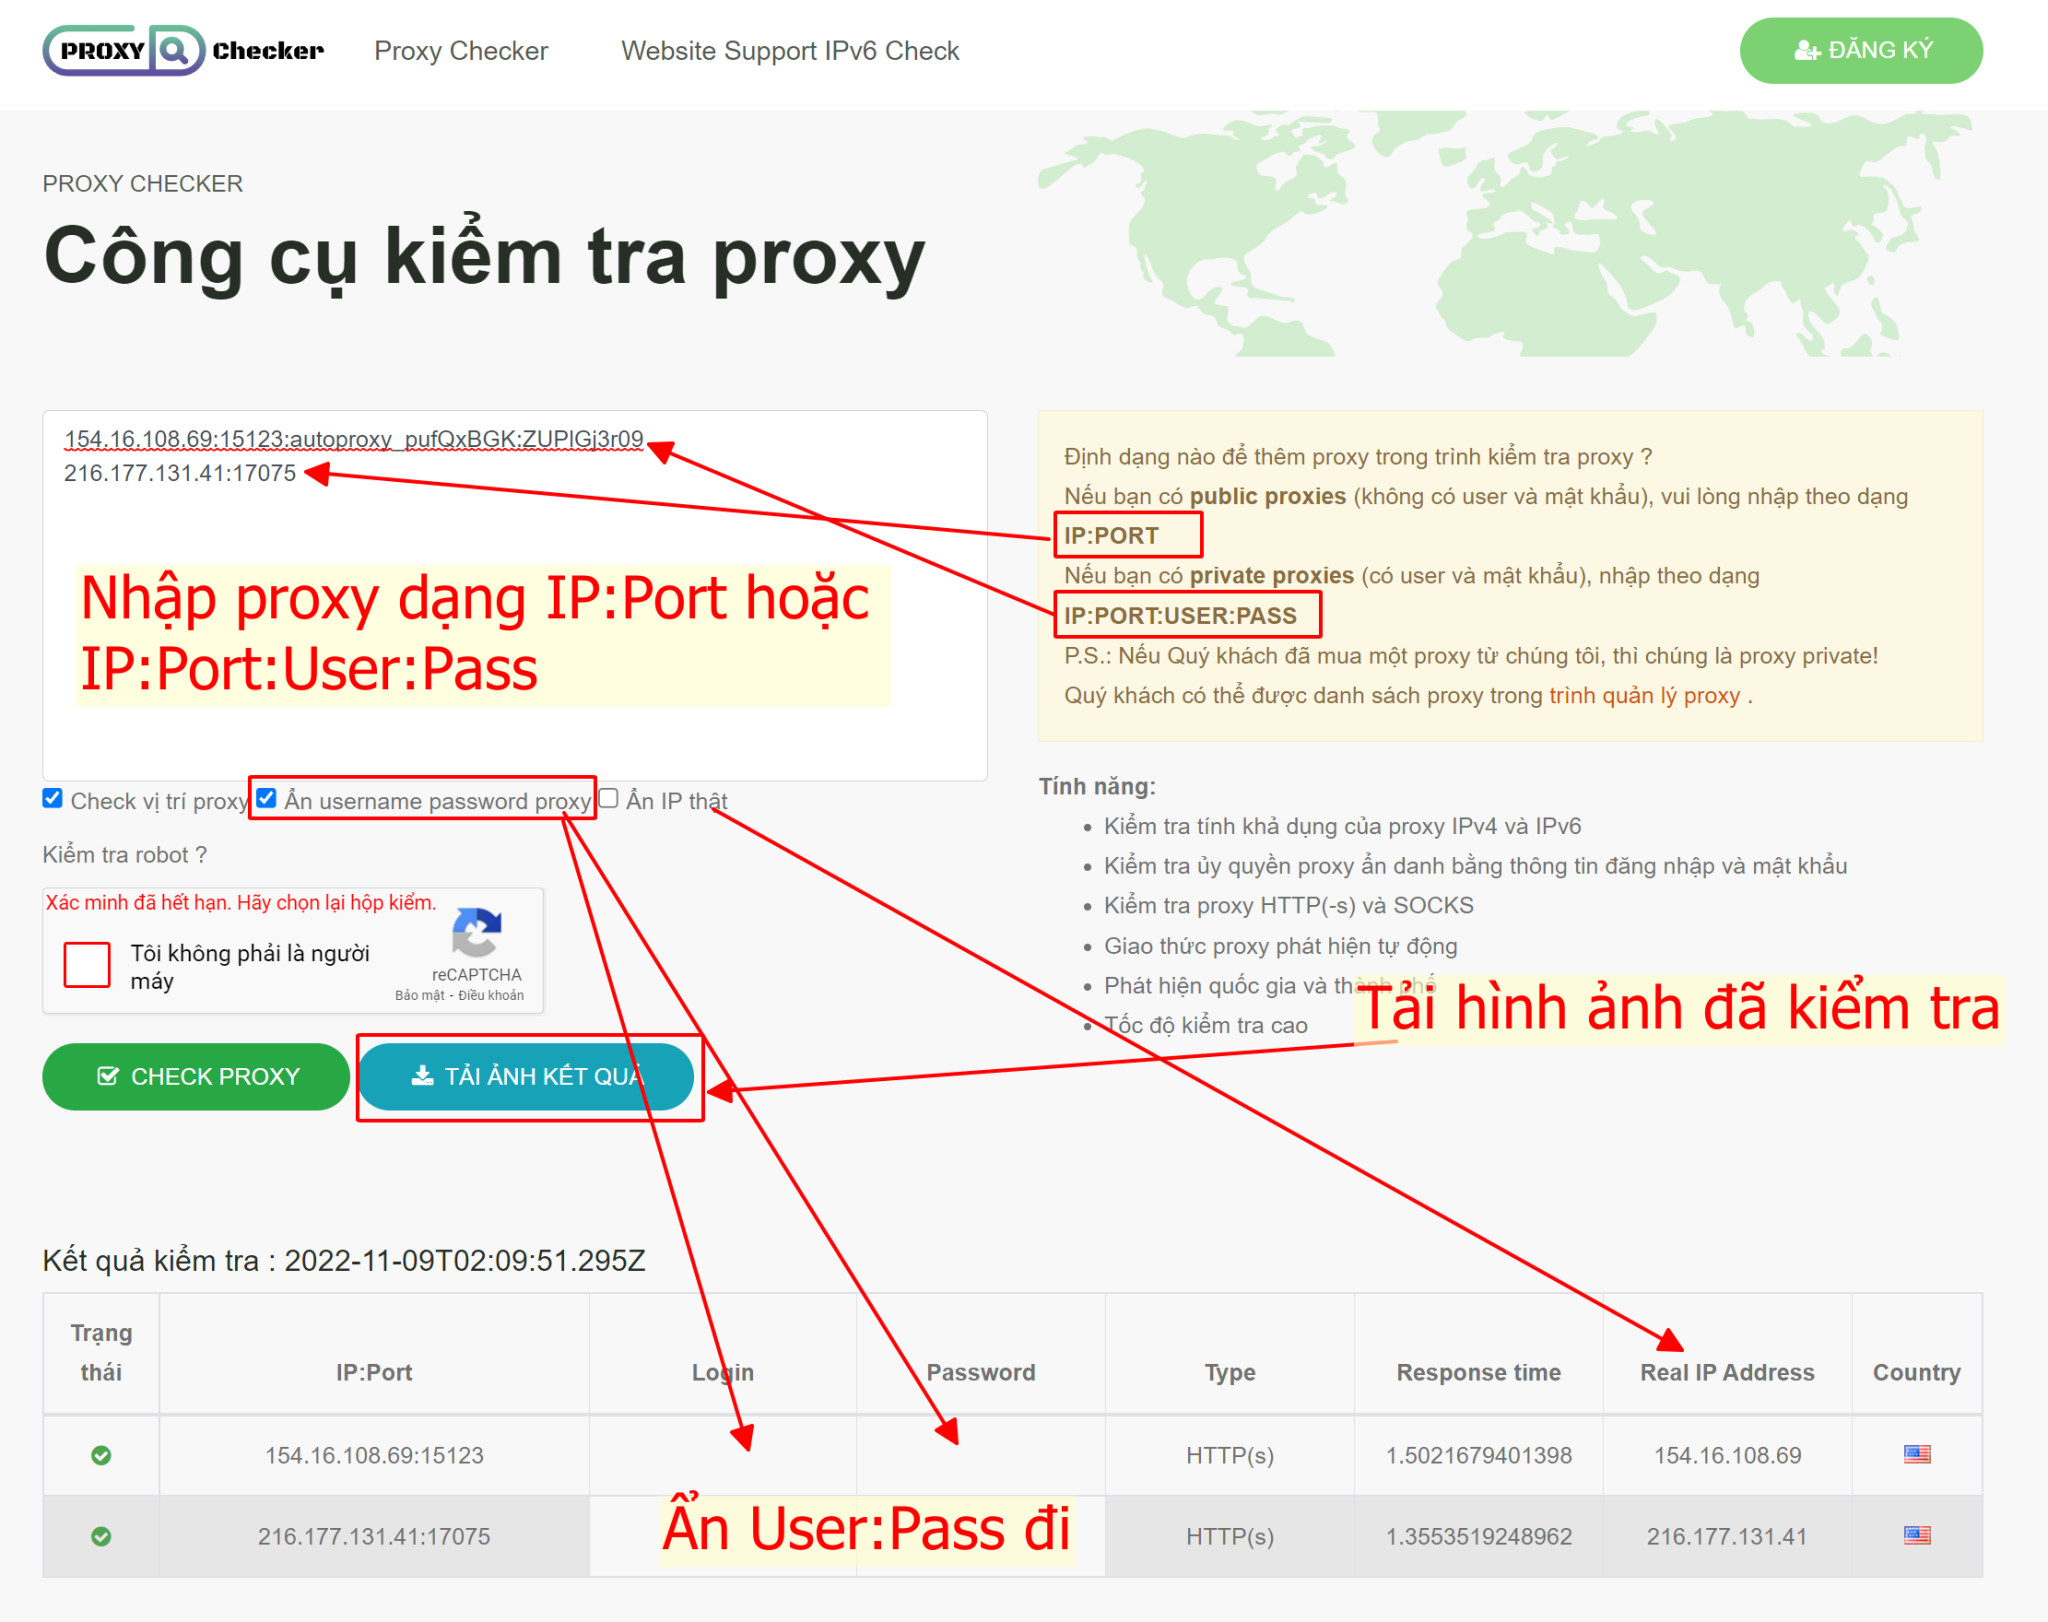 Ra mắt công cụ kiểm tra proxy online - proxychecker.org